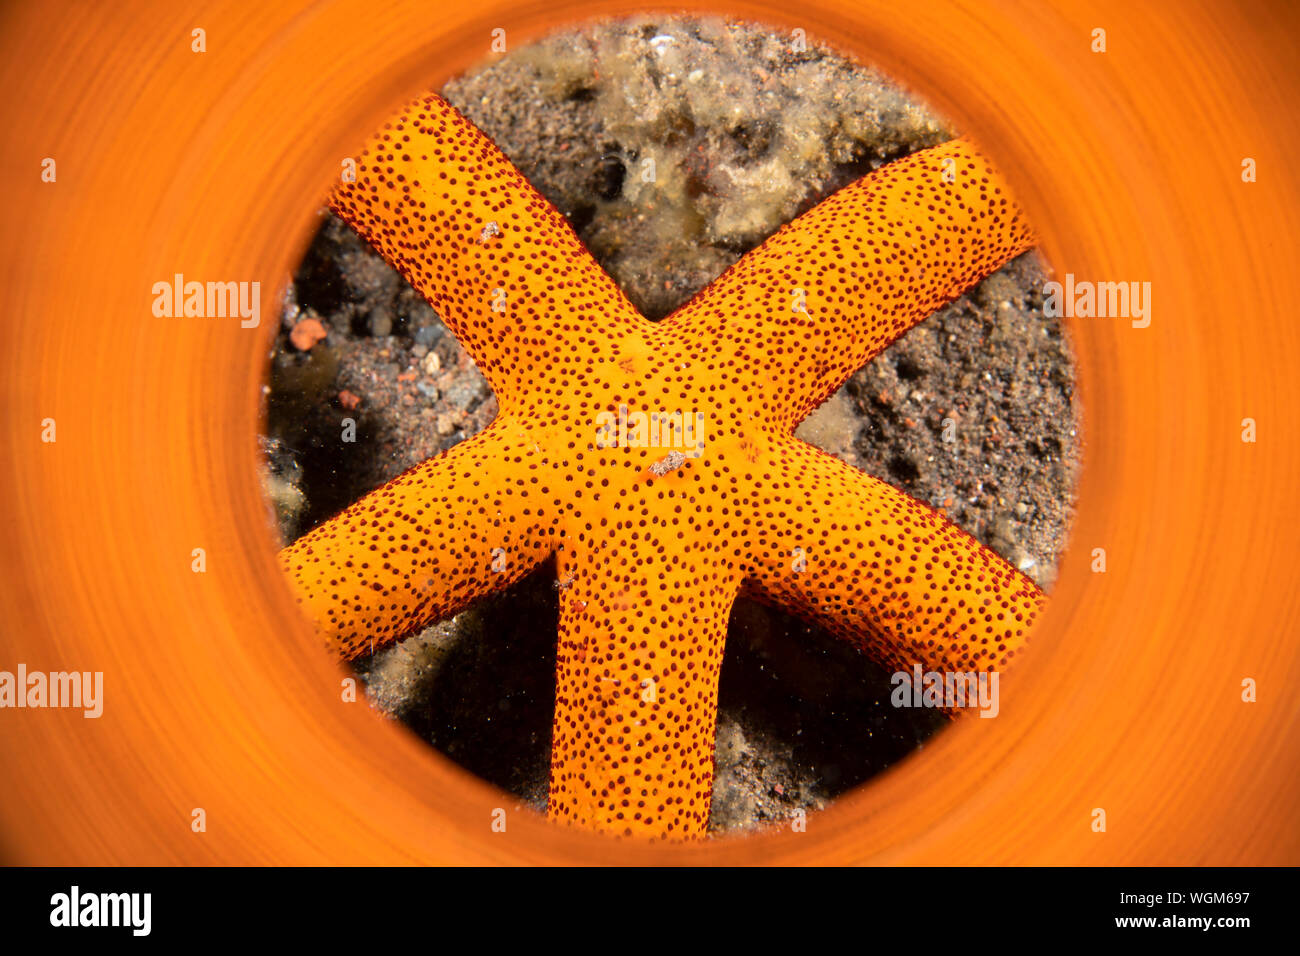 Una luce arancione brillante stella di mare in Indonesia Tulamben regione shot con un tubo riflettente per dare un quadro vibrante per l'animale. Foto Stock